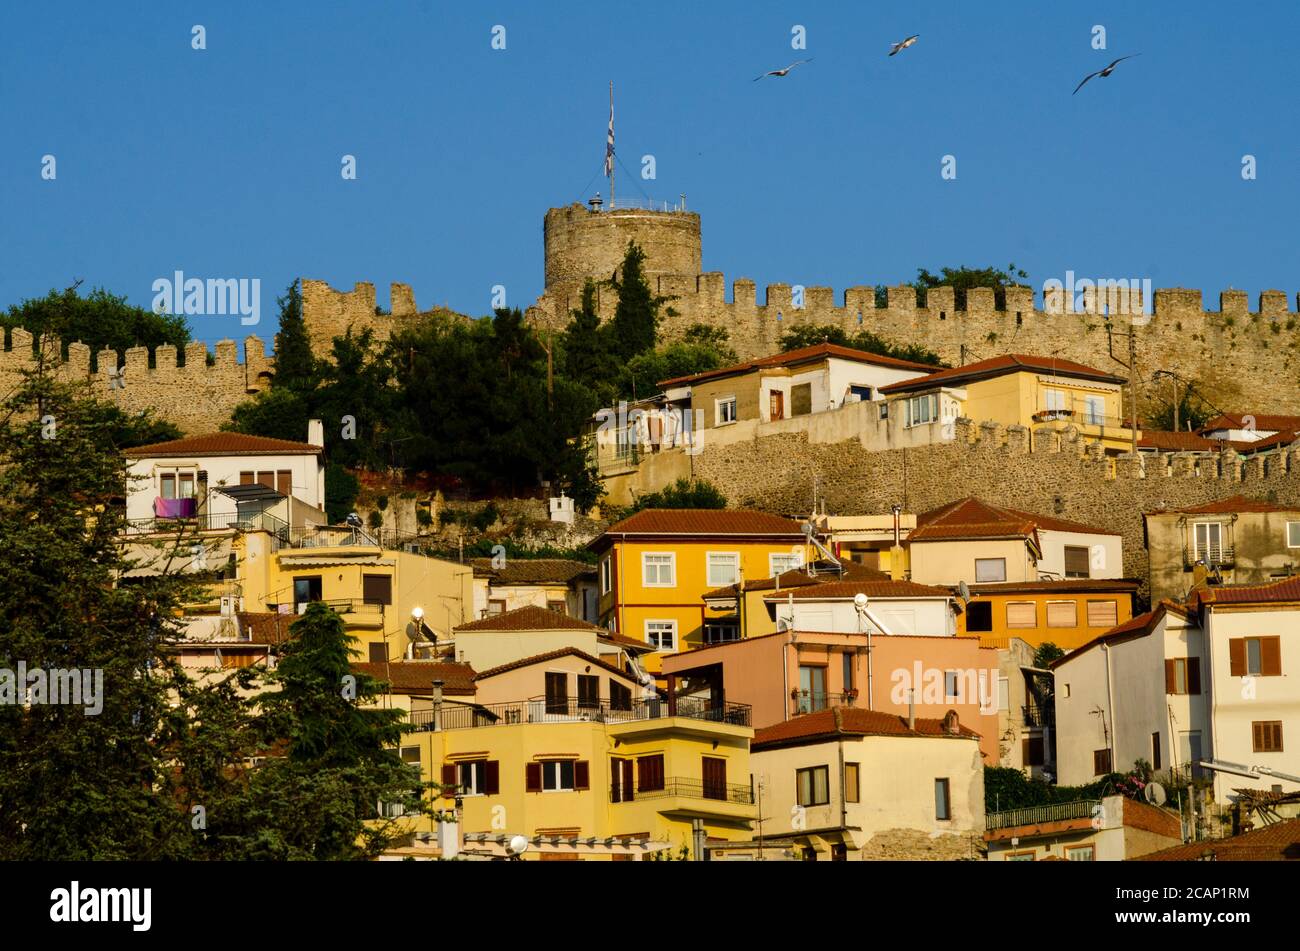 Vue générale du château dominant le paysage urbain de Kavala Grèce - photo: Geopix/Alamy stock photo Banque D'Images